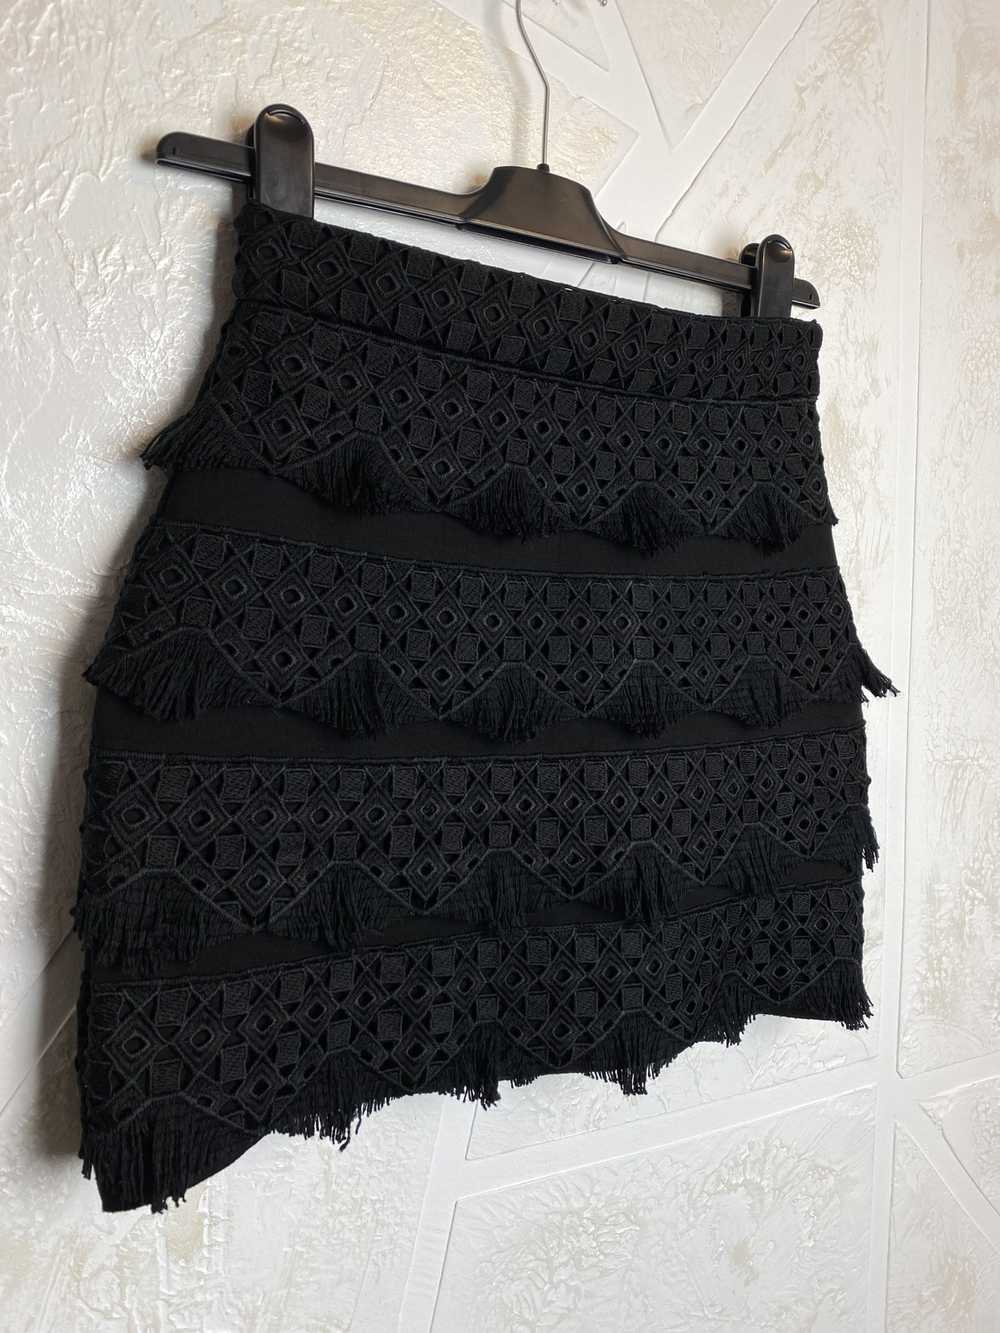 Maje Maje Paris Black Mini Skirt Geometric Patter… - image 3